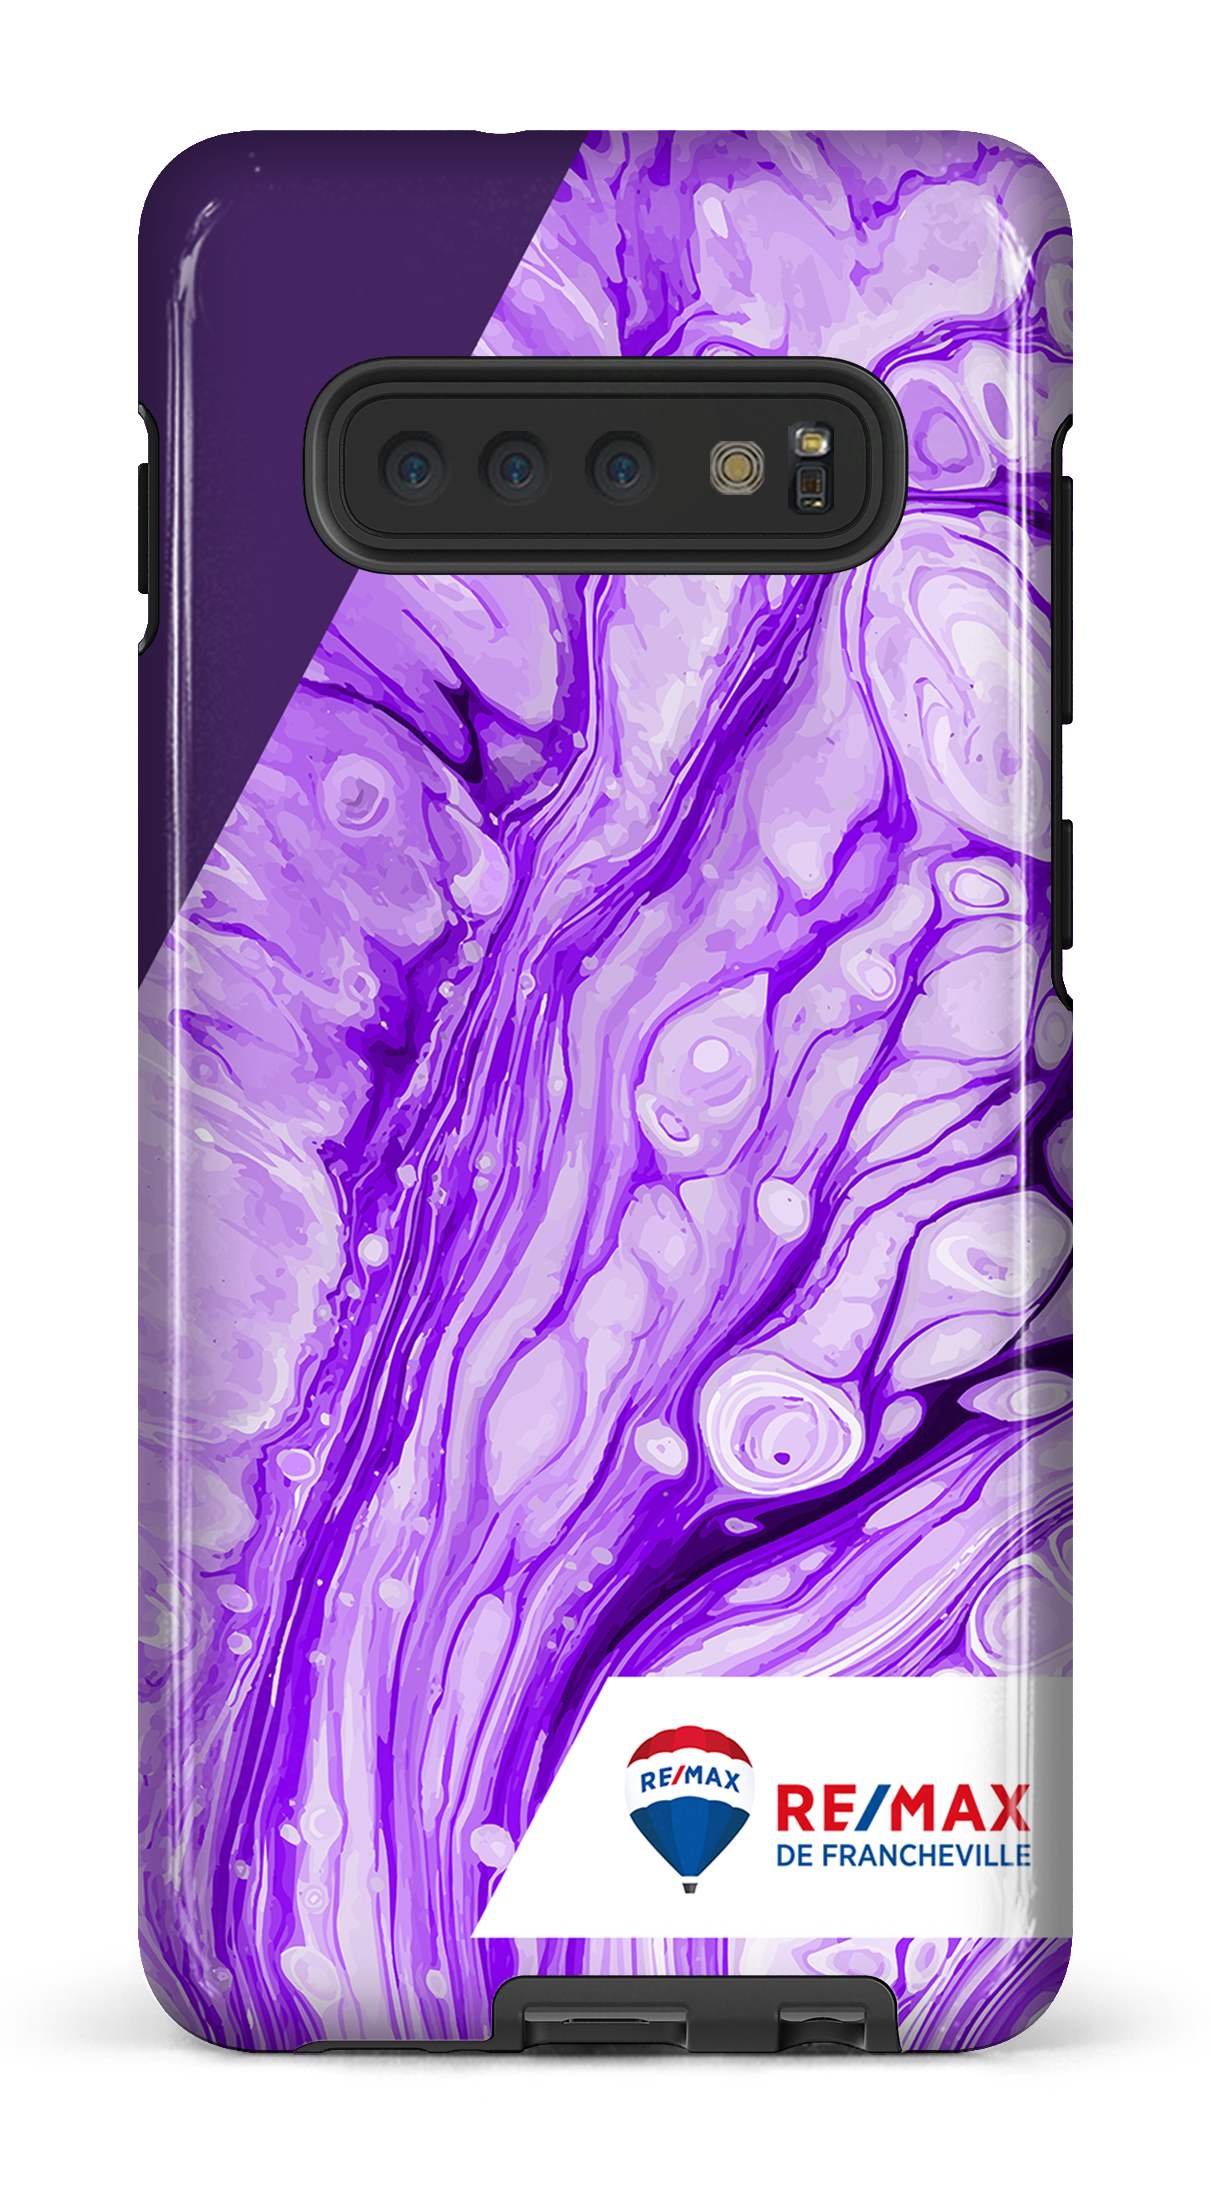 Peinture marbrée claire violette de Francheville - Galaxy S10 Plus